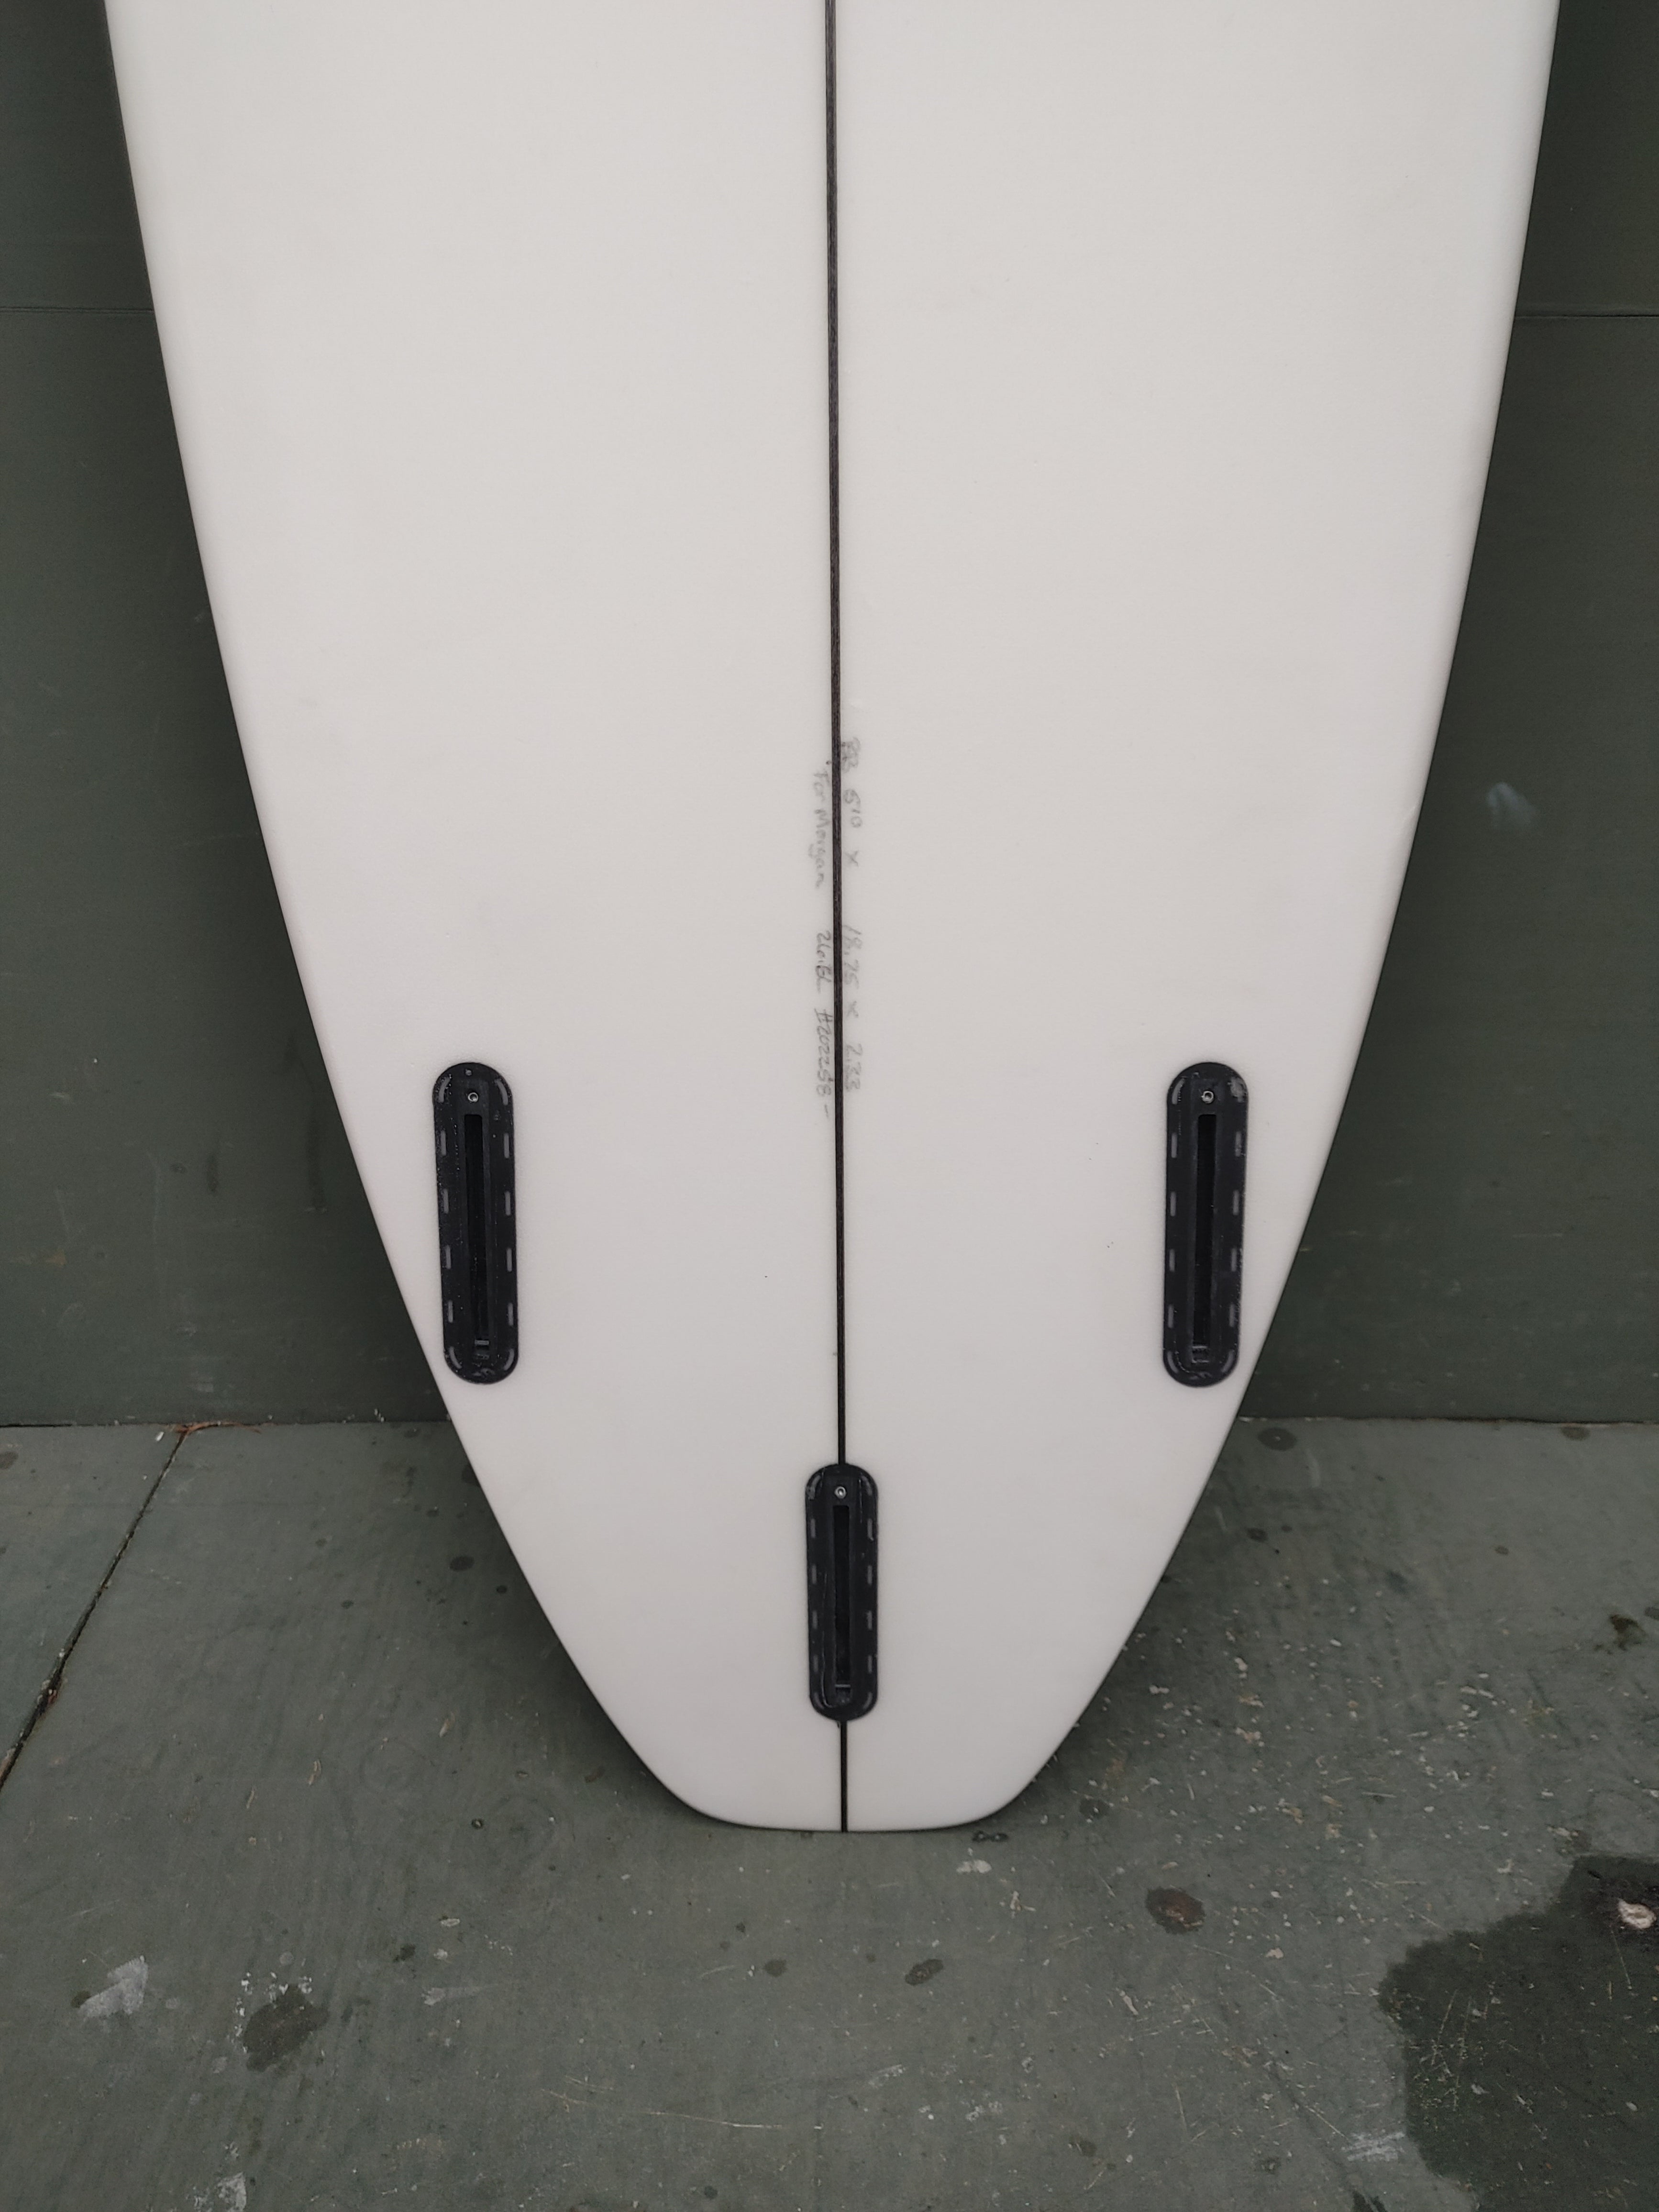 Used Algorithm Surfboards - 5'10" HD Surfboard - Seaside Surf Shop 